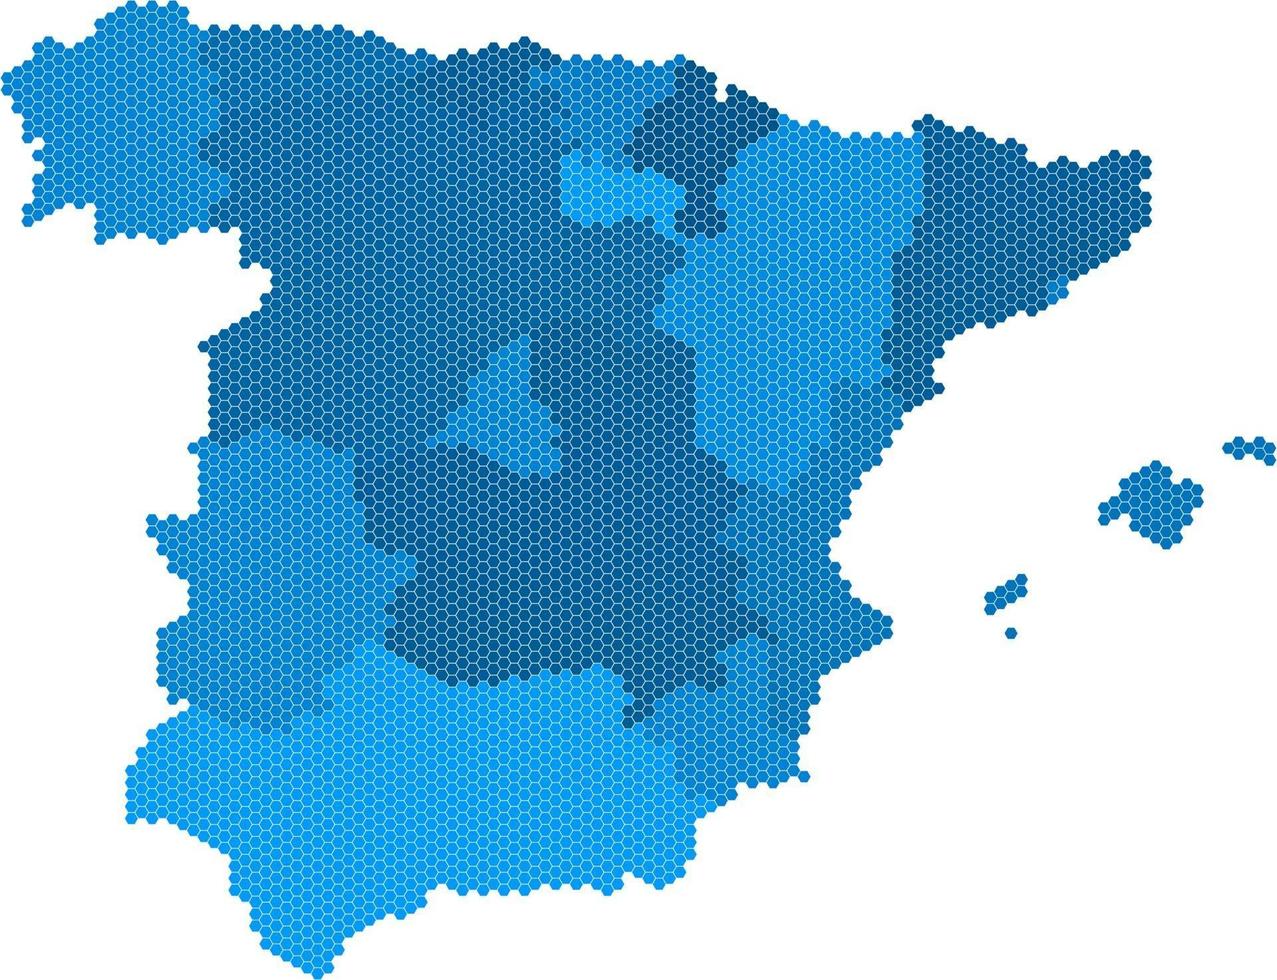 blauwe zeshoek vorm Spanje kaart op witte achtergrond. vectorillustratie. vector